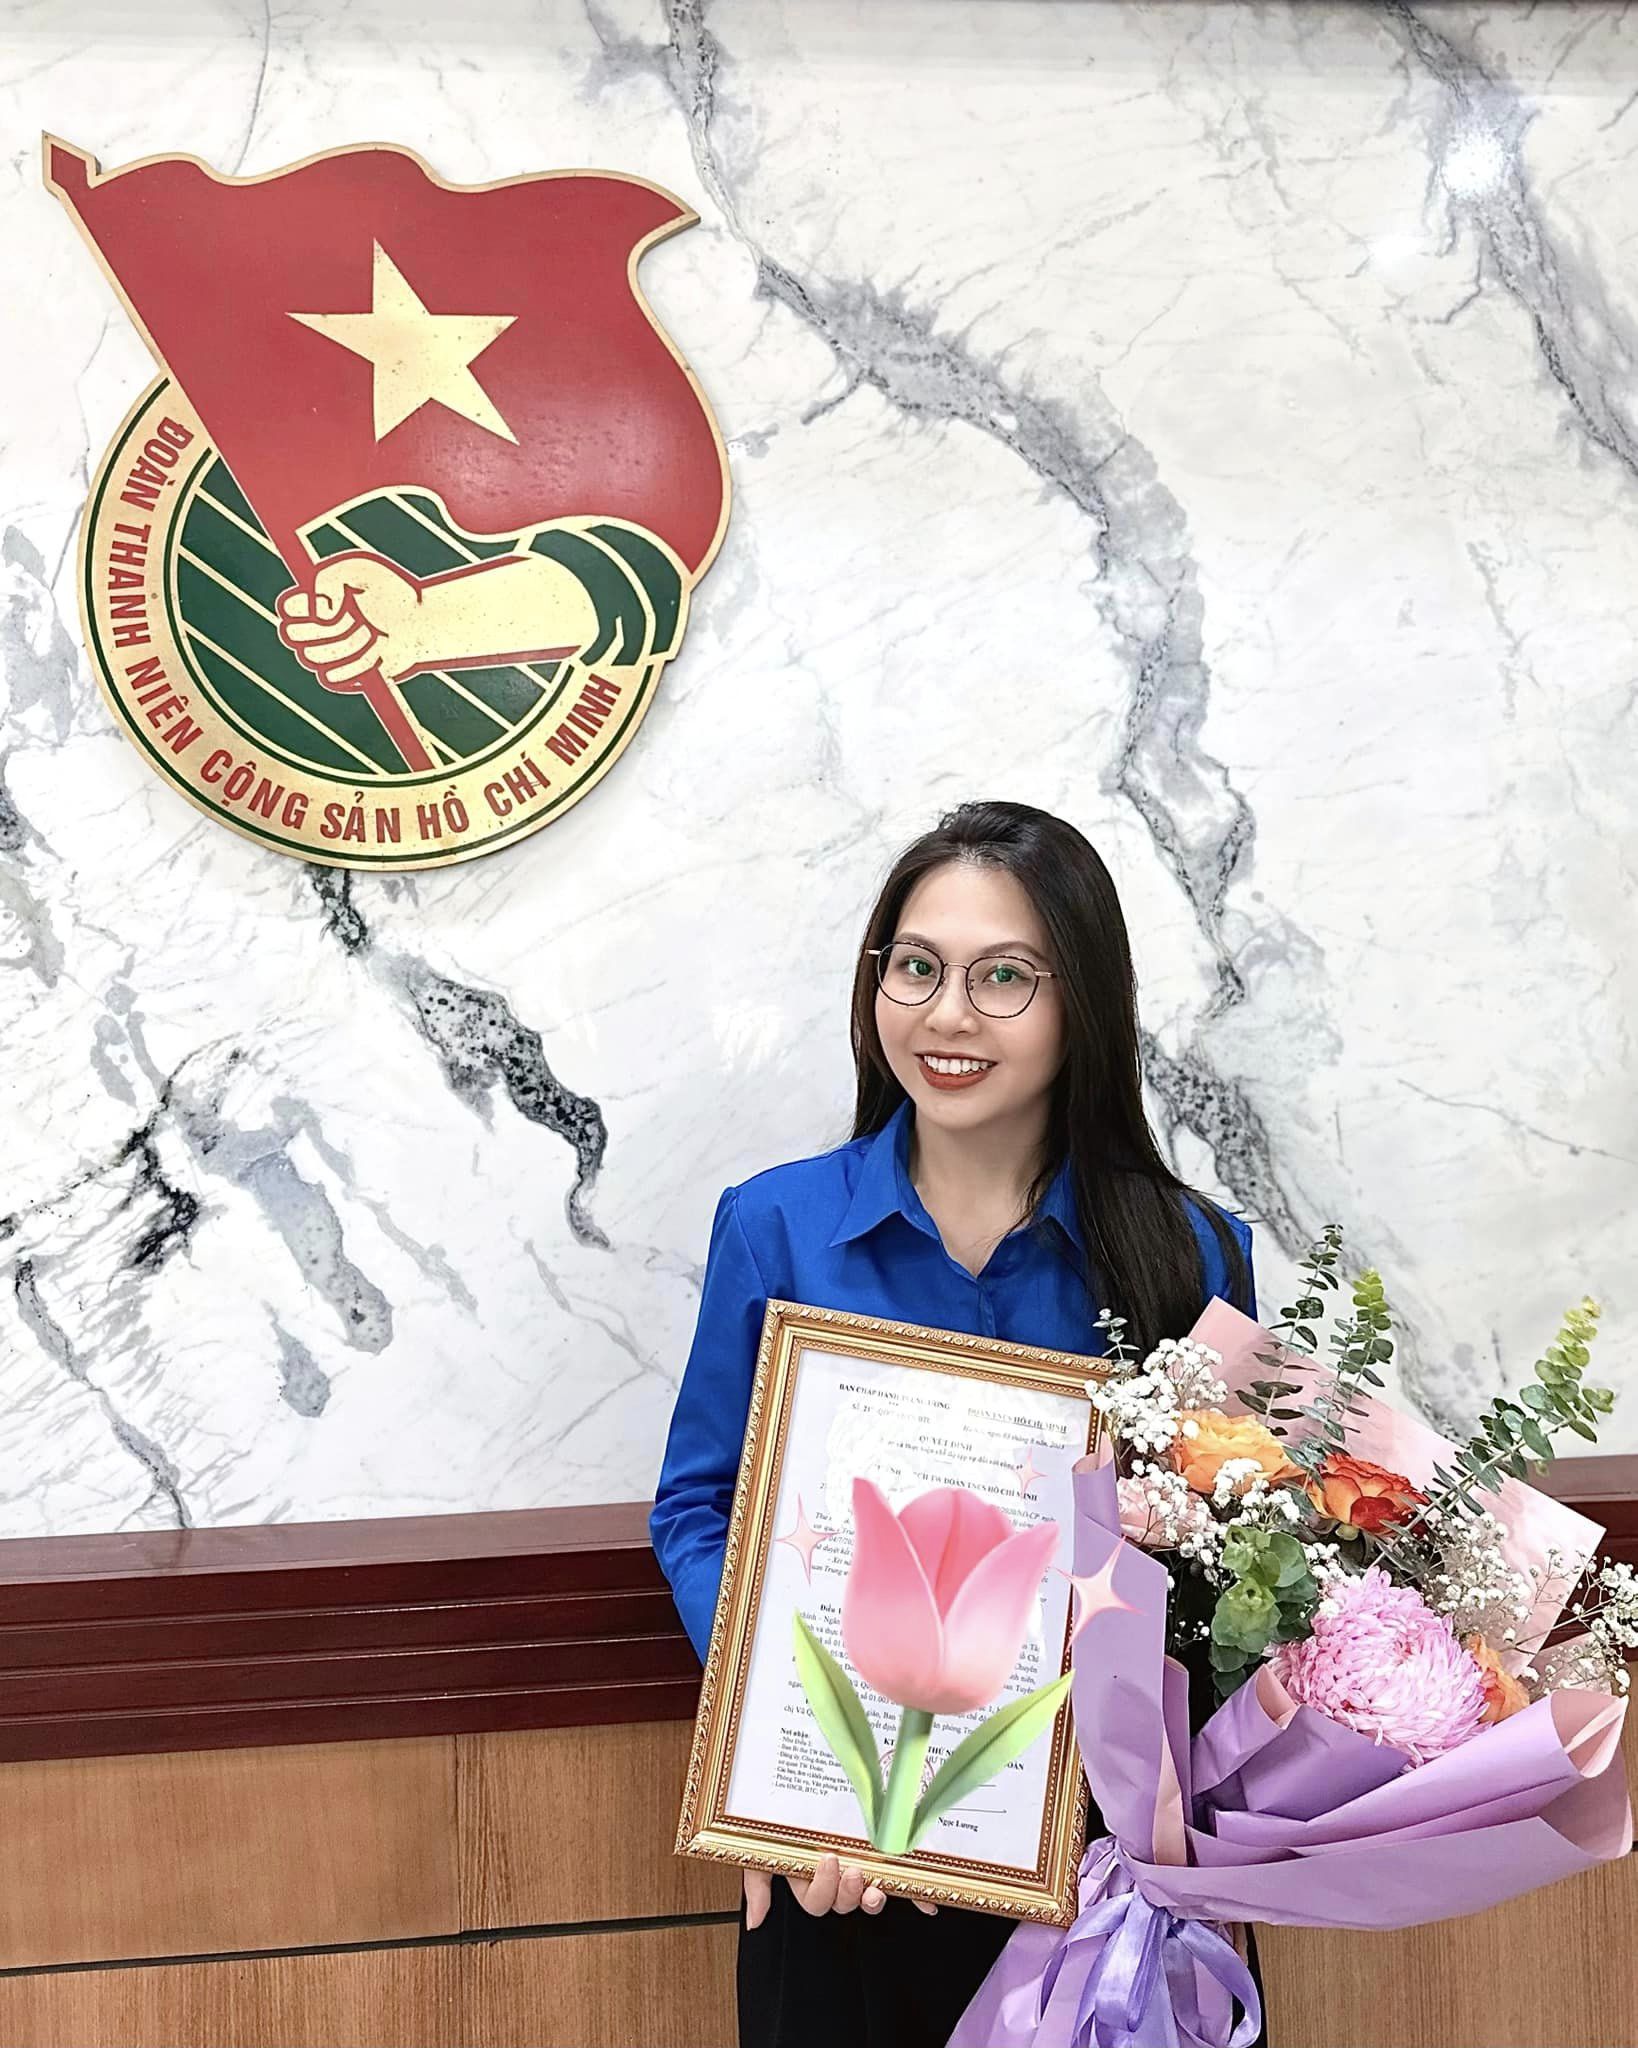 Profile siêu đỉnh của Vũ Quỳnh Anh, cô gái phát biểu tại lễ kỷ niệm 70 năm chiến thắng Điện Biên Phủ - ảnh 2